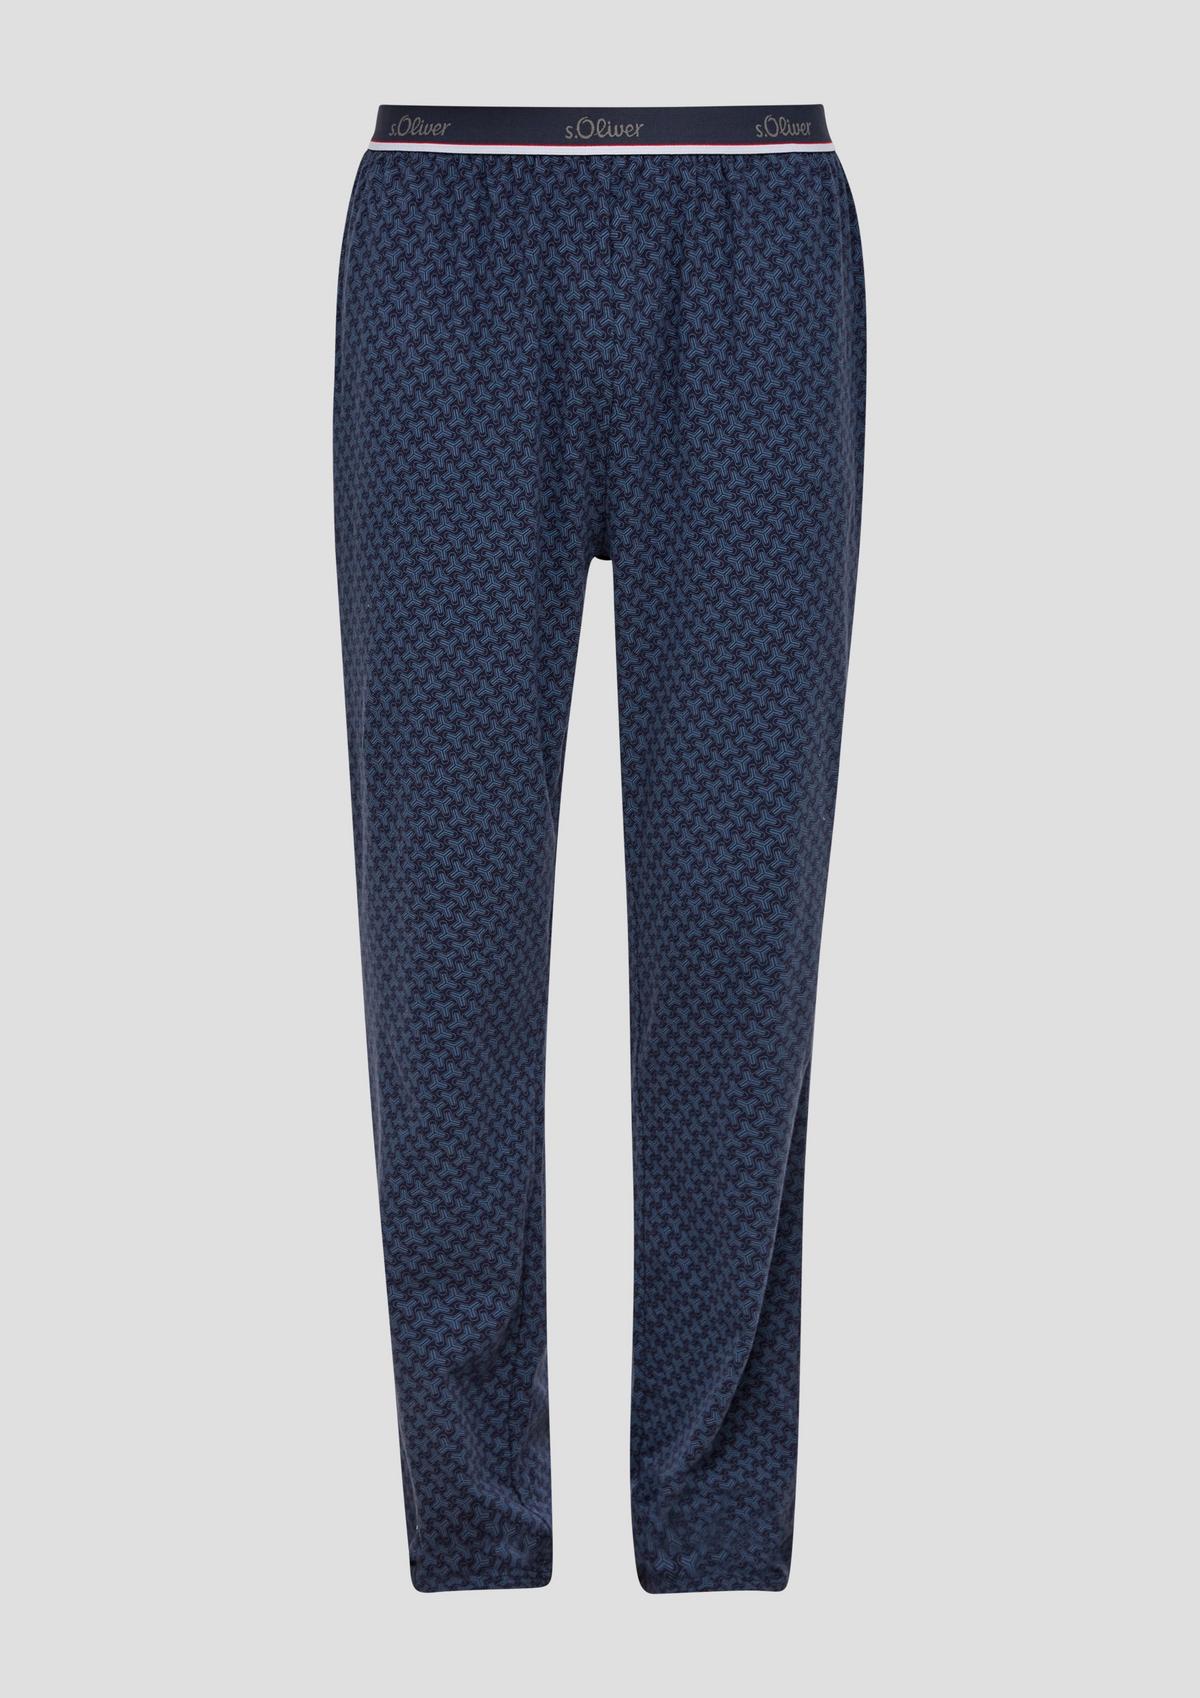 kaufen im Online Pyjamas Herren jetzt für Shop